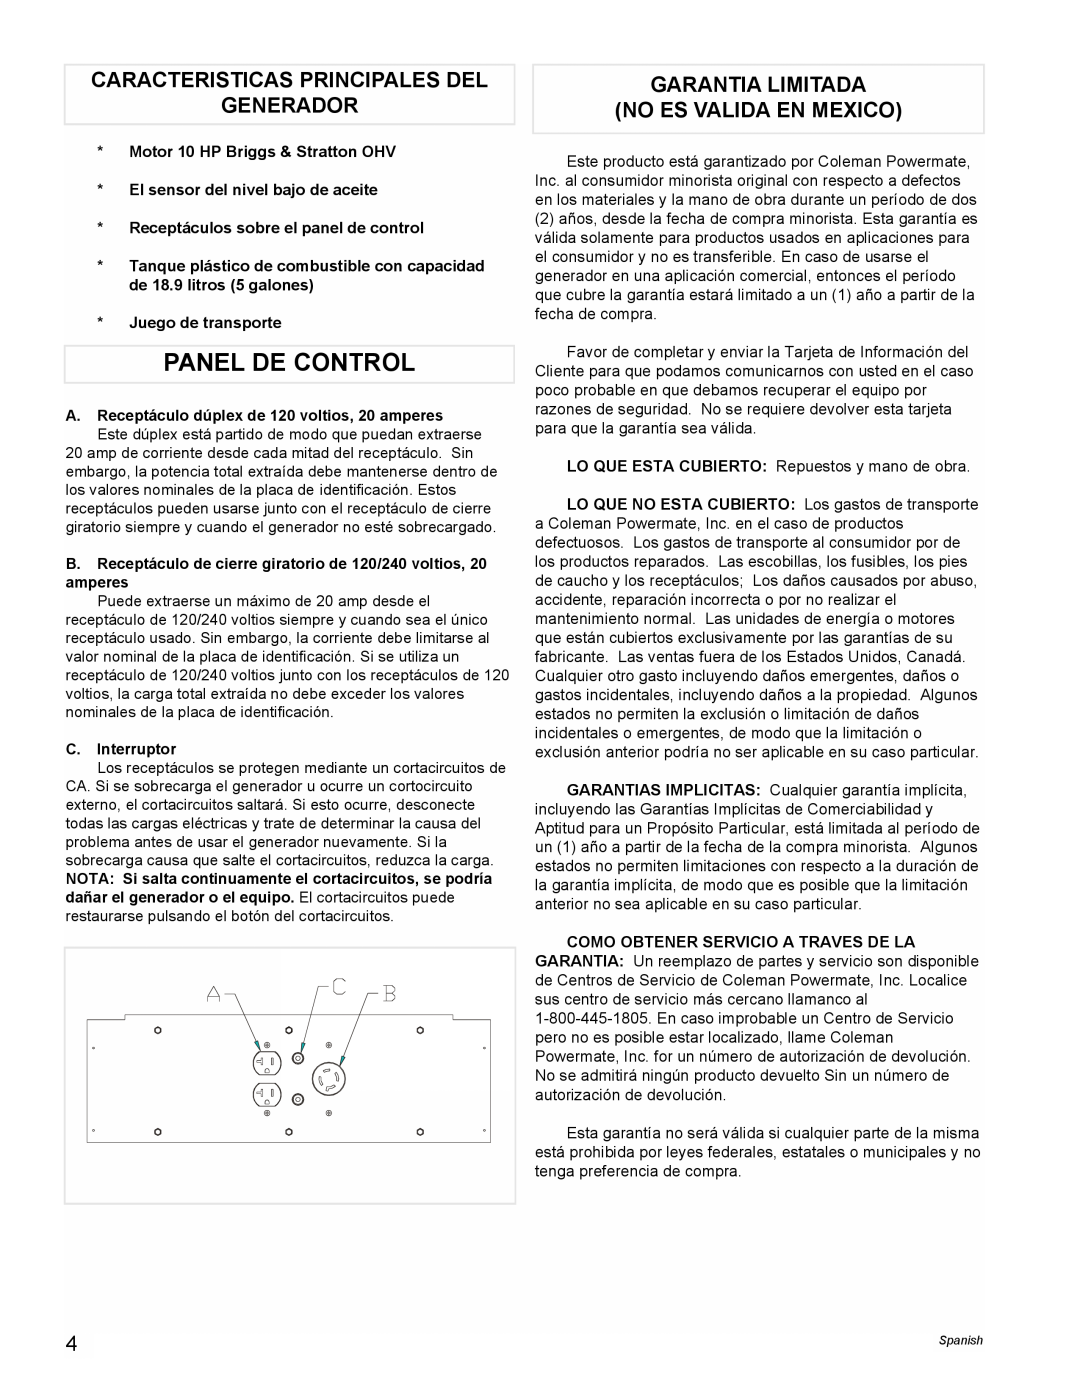 Powermate PM0545006 Panel De Control, Caracteristicas Principales Del Generador, Garantia Limitada No Es Valida En Mexico 